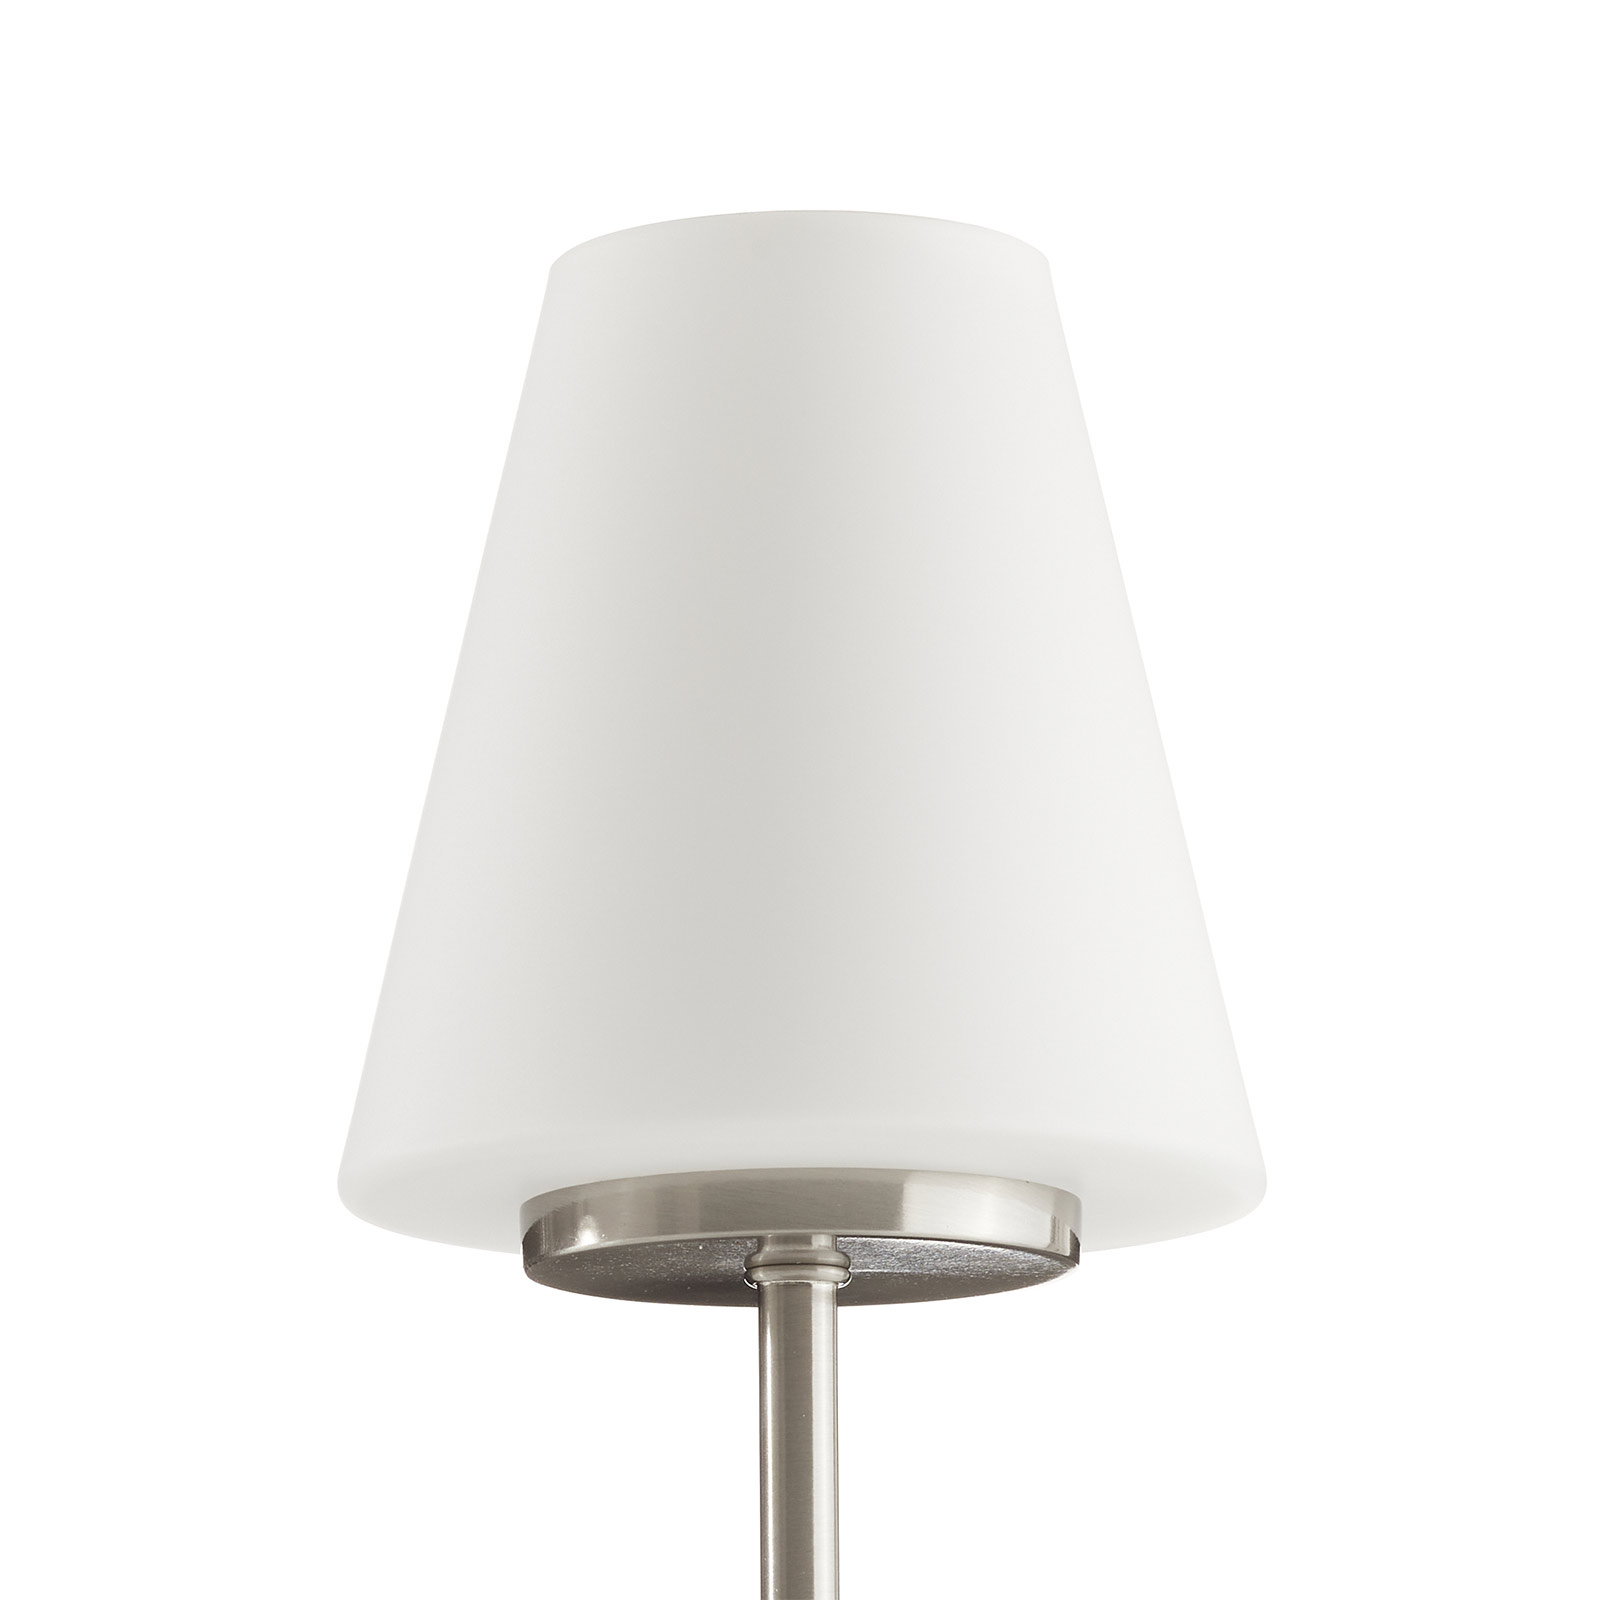 Tafellamp met touchfunctie, wit | Lampen24.nl